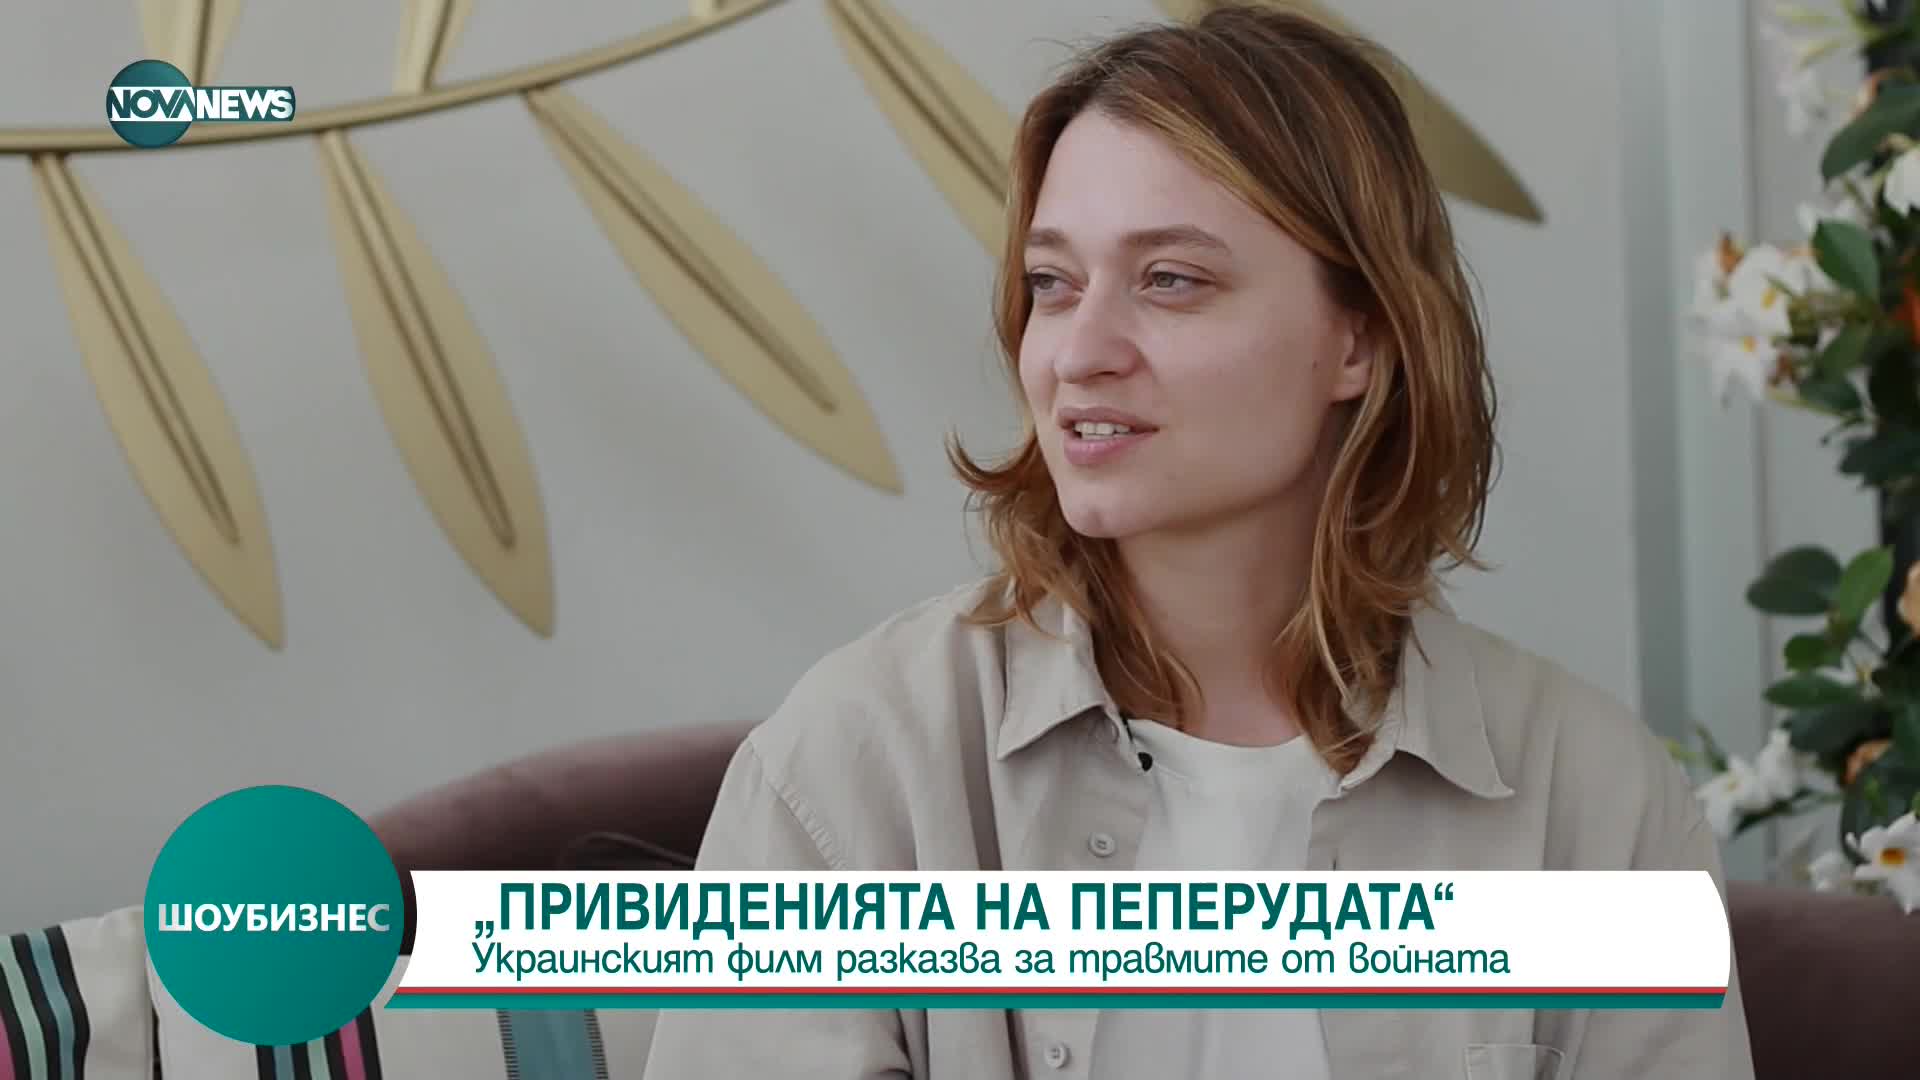 Украински режисьор представи "Привиденията на пеперудата" - филм за войната в Донбас